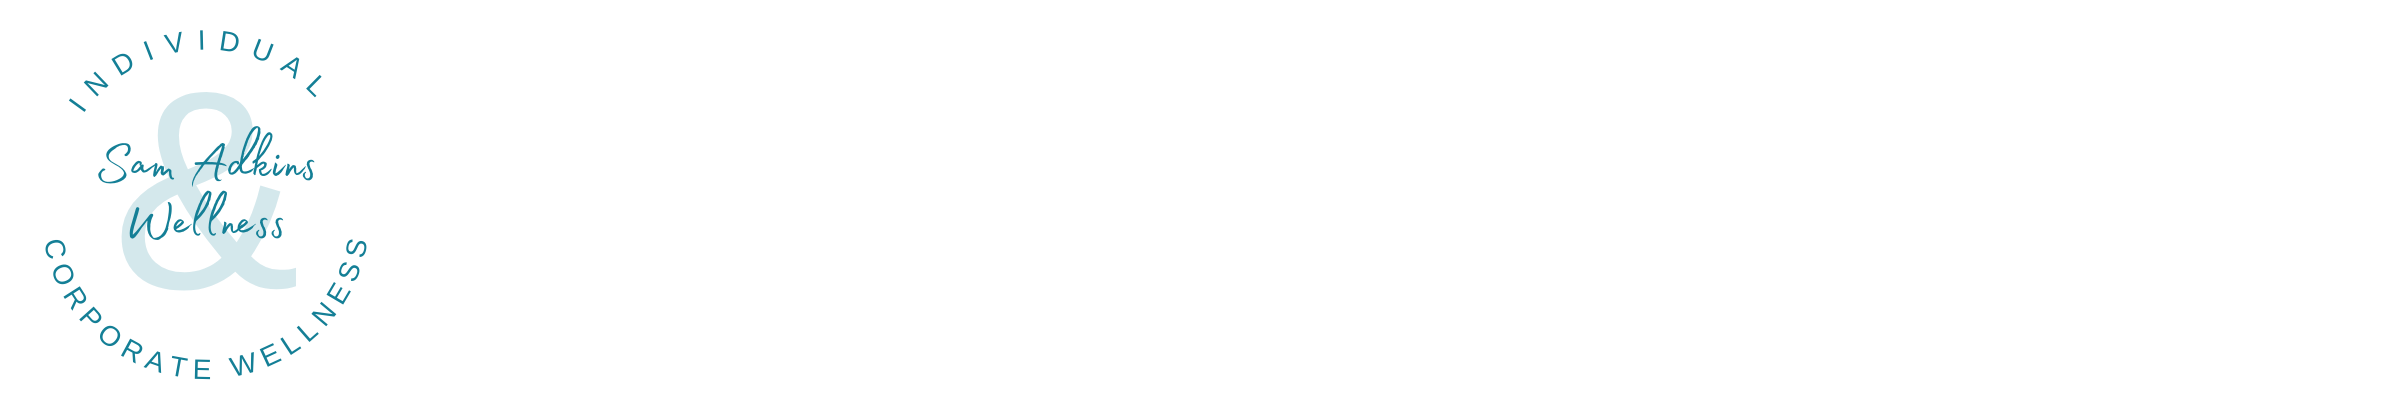 Sam Adkins logo